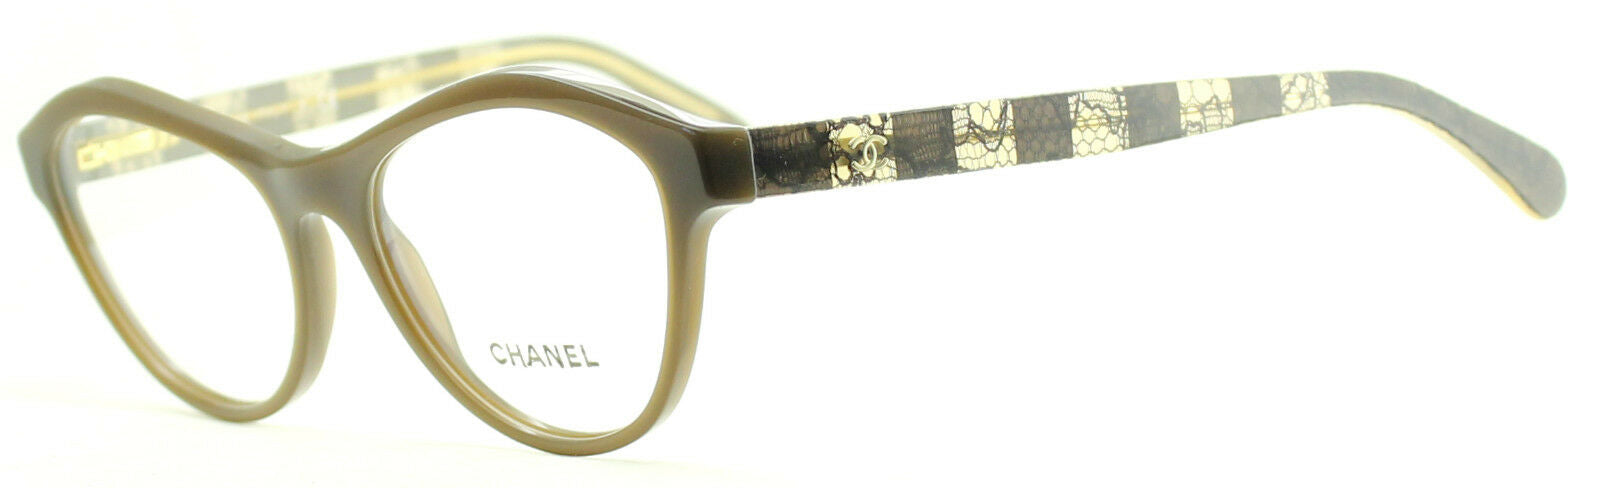 CHANEL 3317 c.1516 52mm Eyewear FRAMES Eyeglasses RX Optical